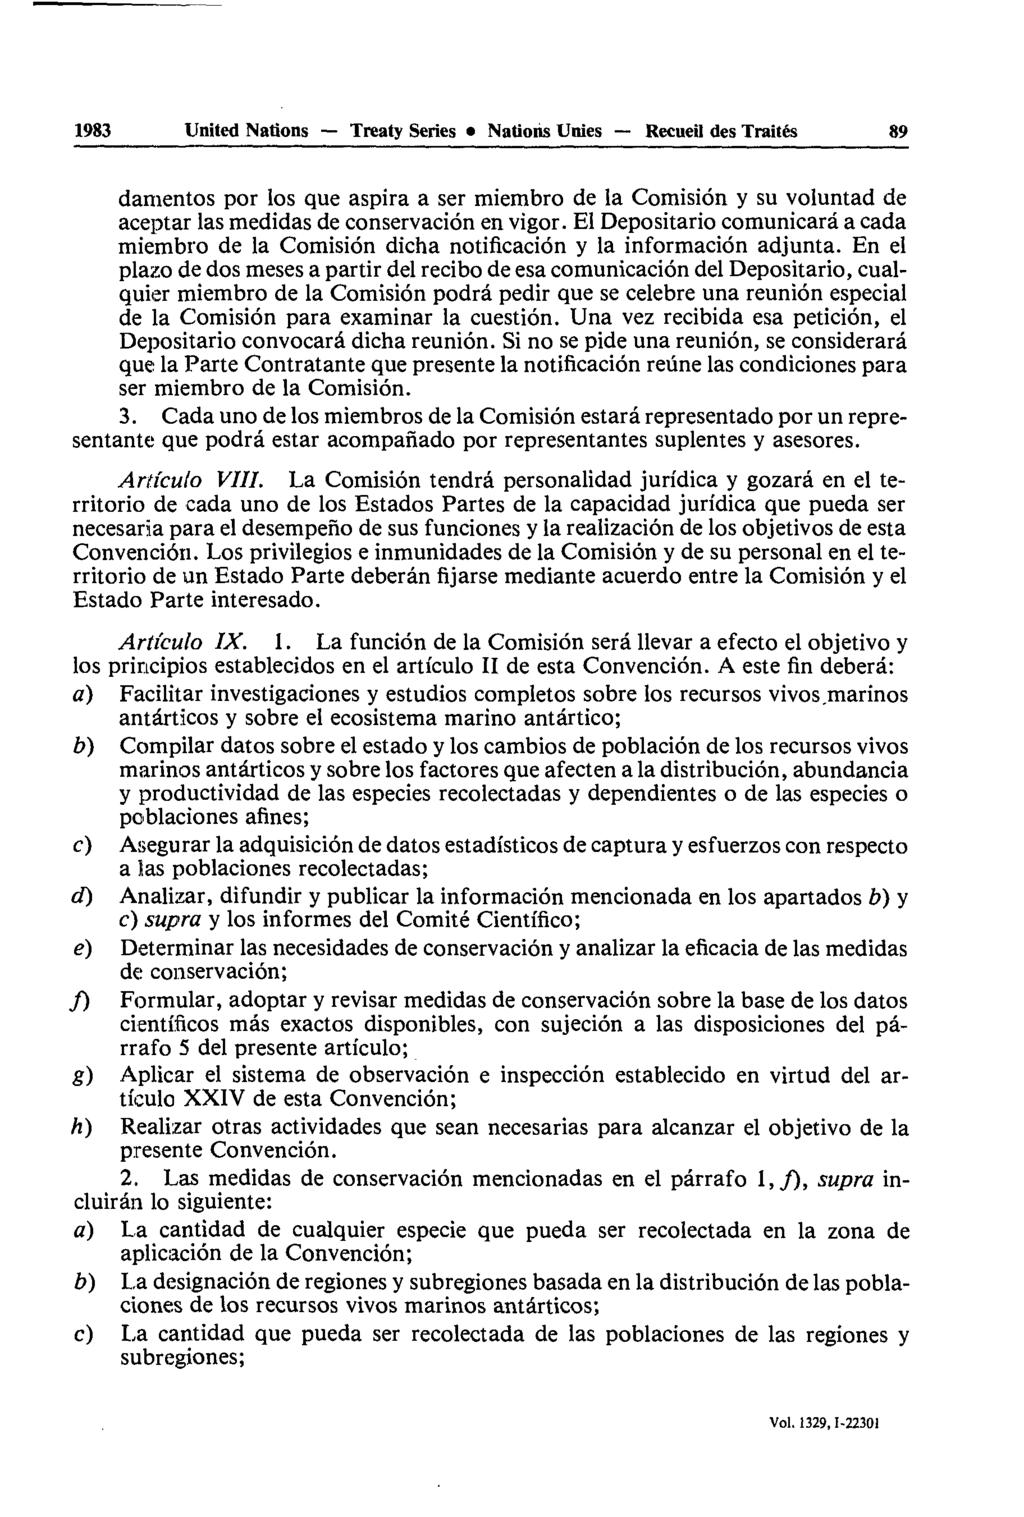 1983 United Nations Treaty Series Nations Unies Recueil des Traités 89 danientos por los que aspira a ser miembro de la Comisiôn y su voluntad de aceptar las medidas de conservaciôn en vigor.